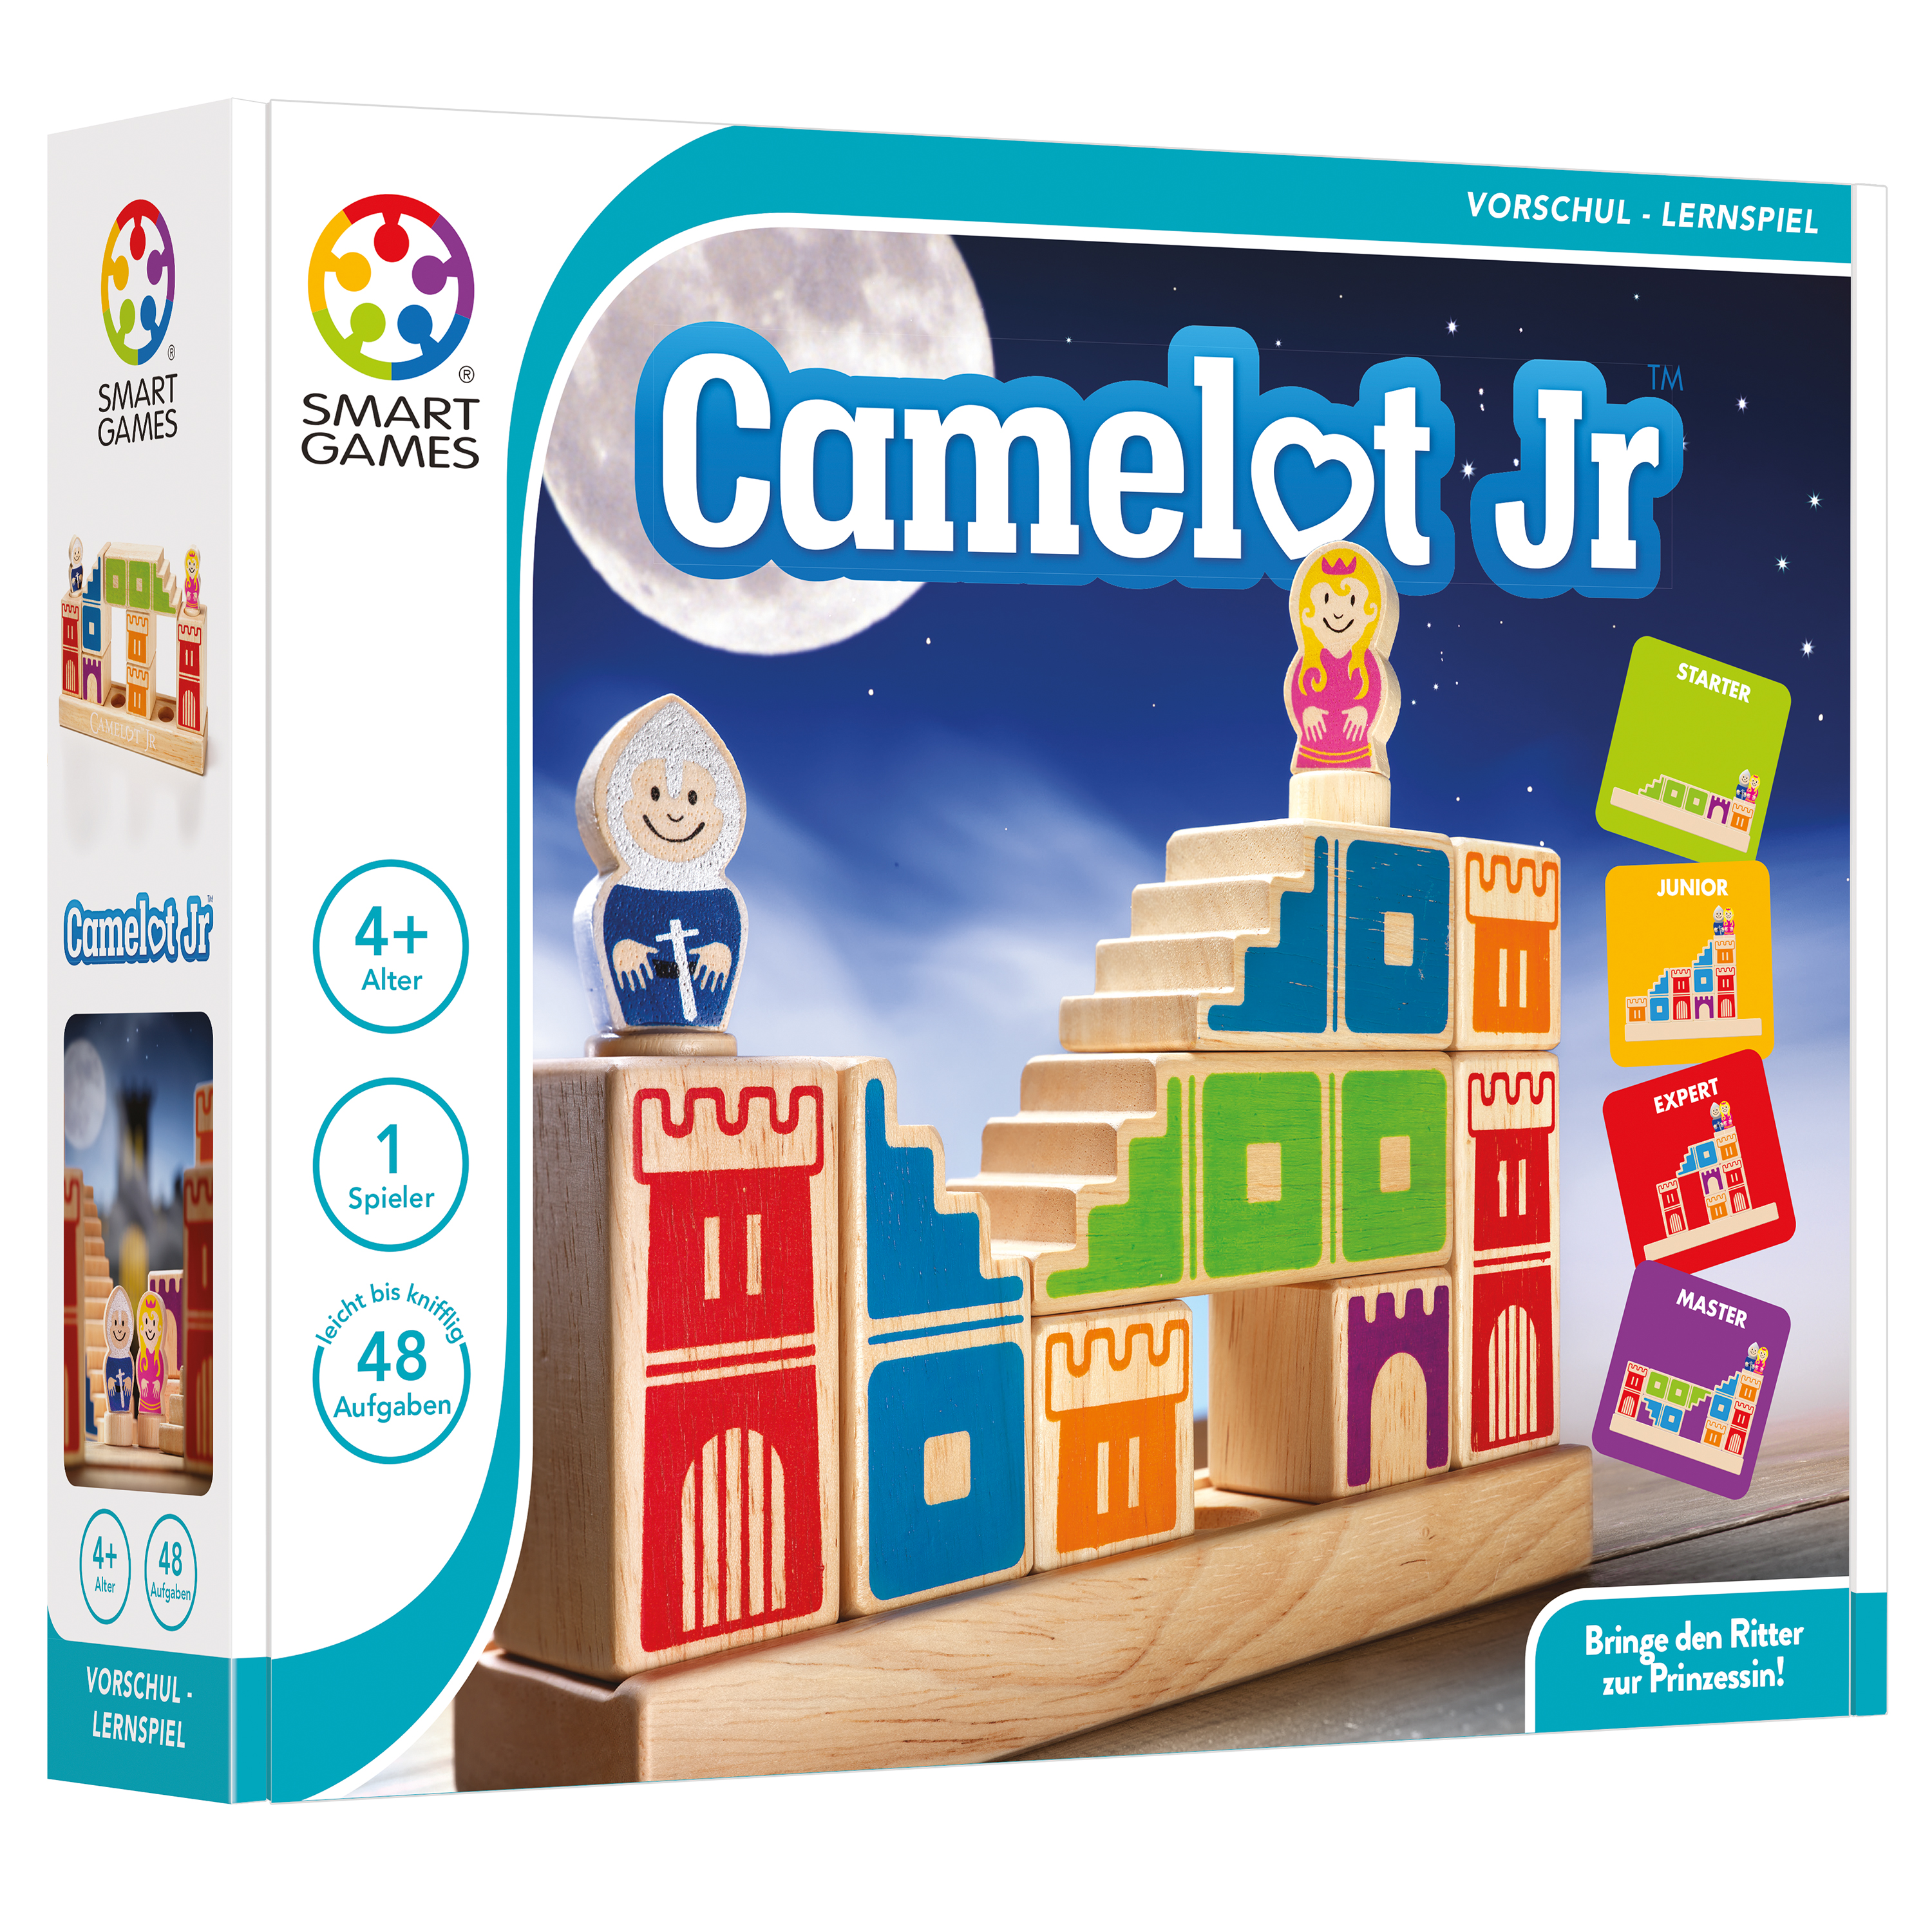 SMART GAMES Camelot Junior